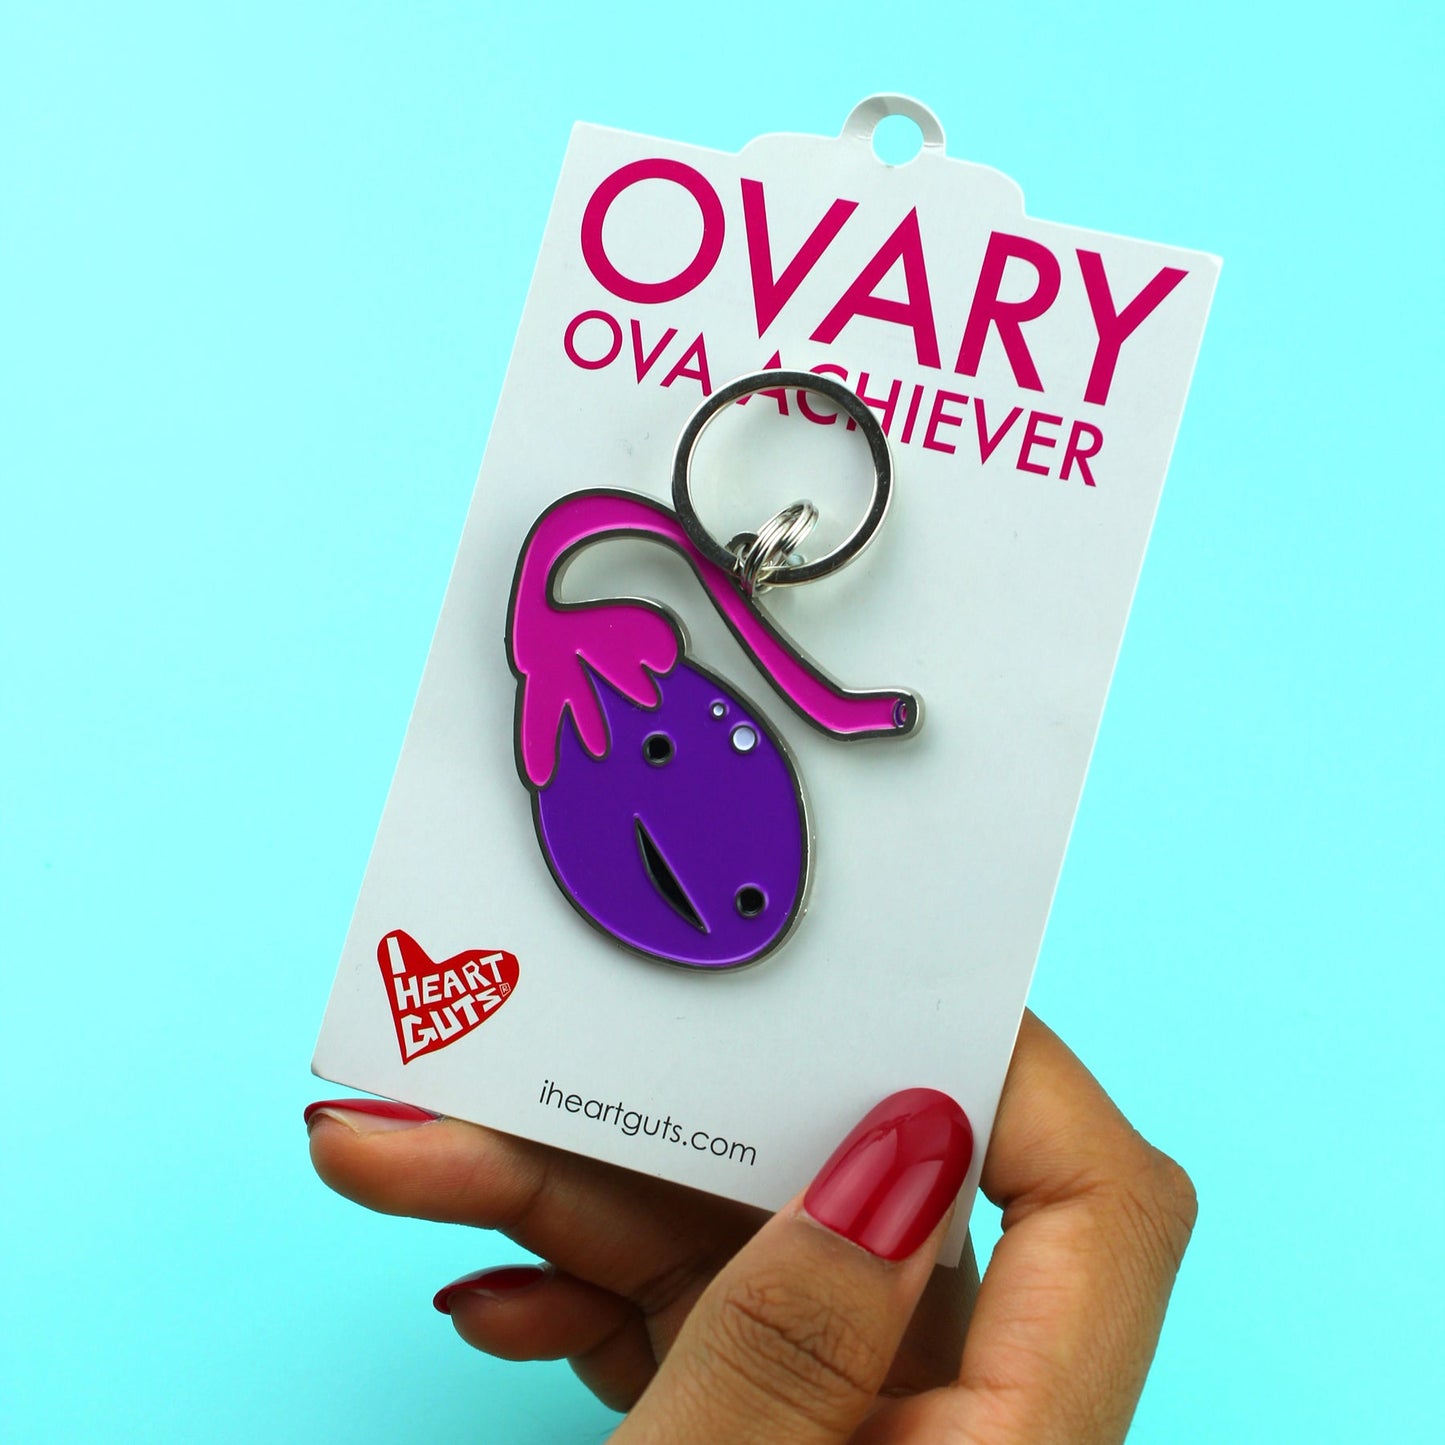 Ovary Keychain - Ova Achiever